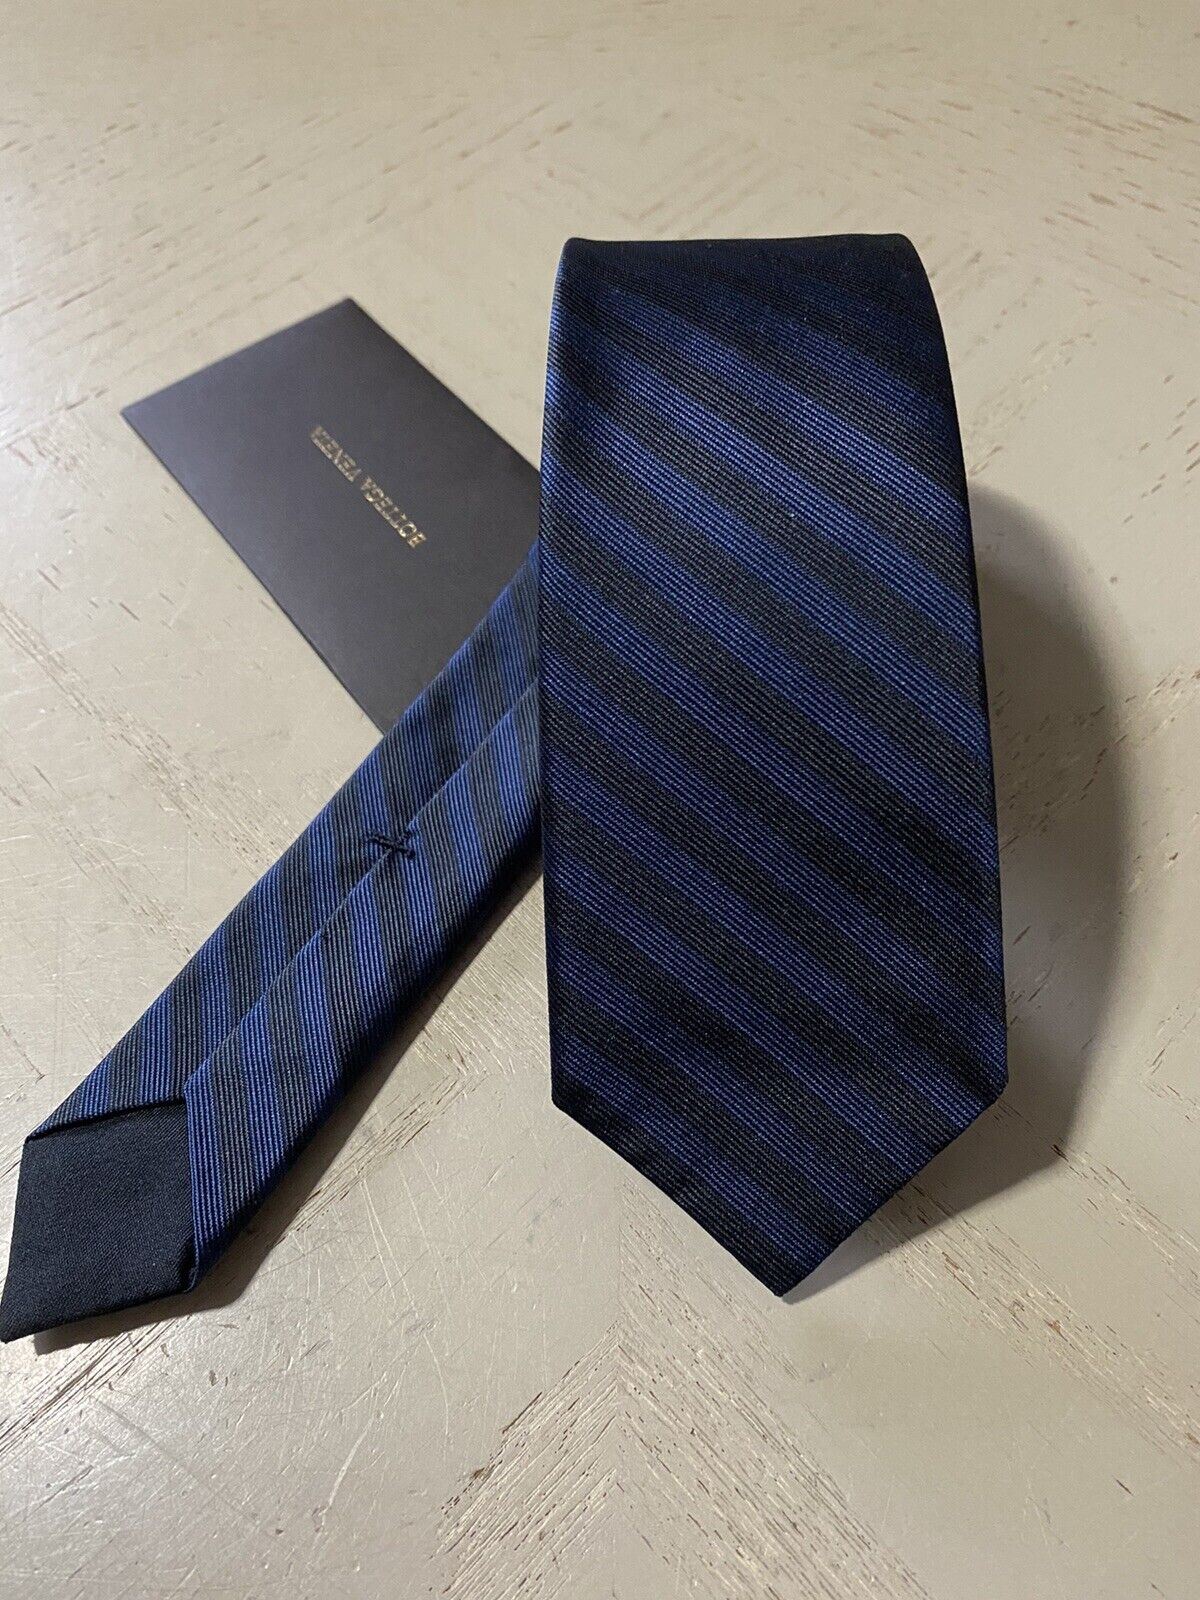 Новый узкий шелковый галстук Bottega Veneta Petroleum Midnight Blue производства Италии